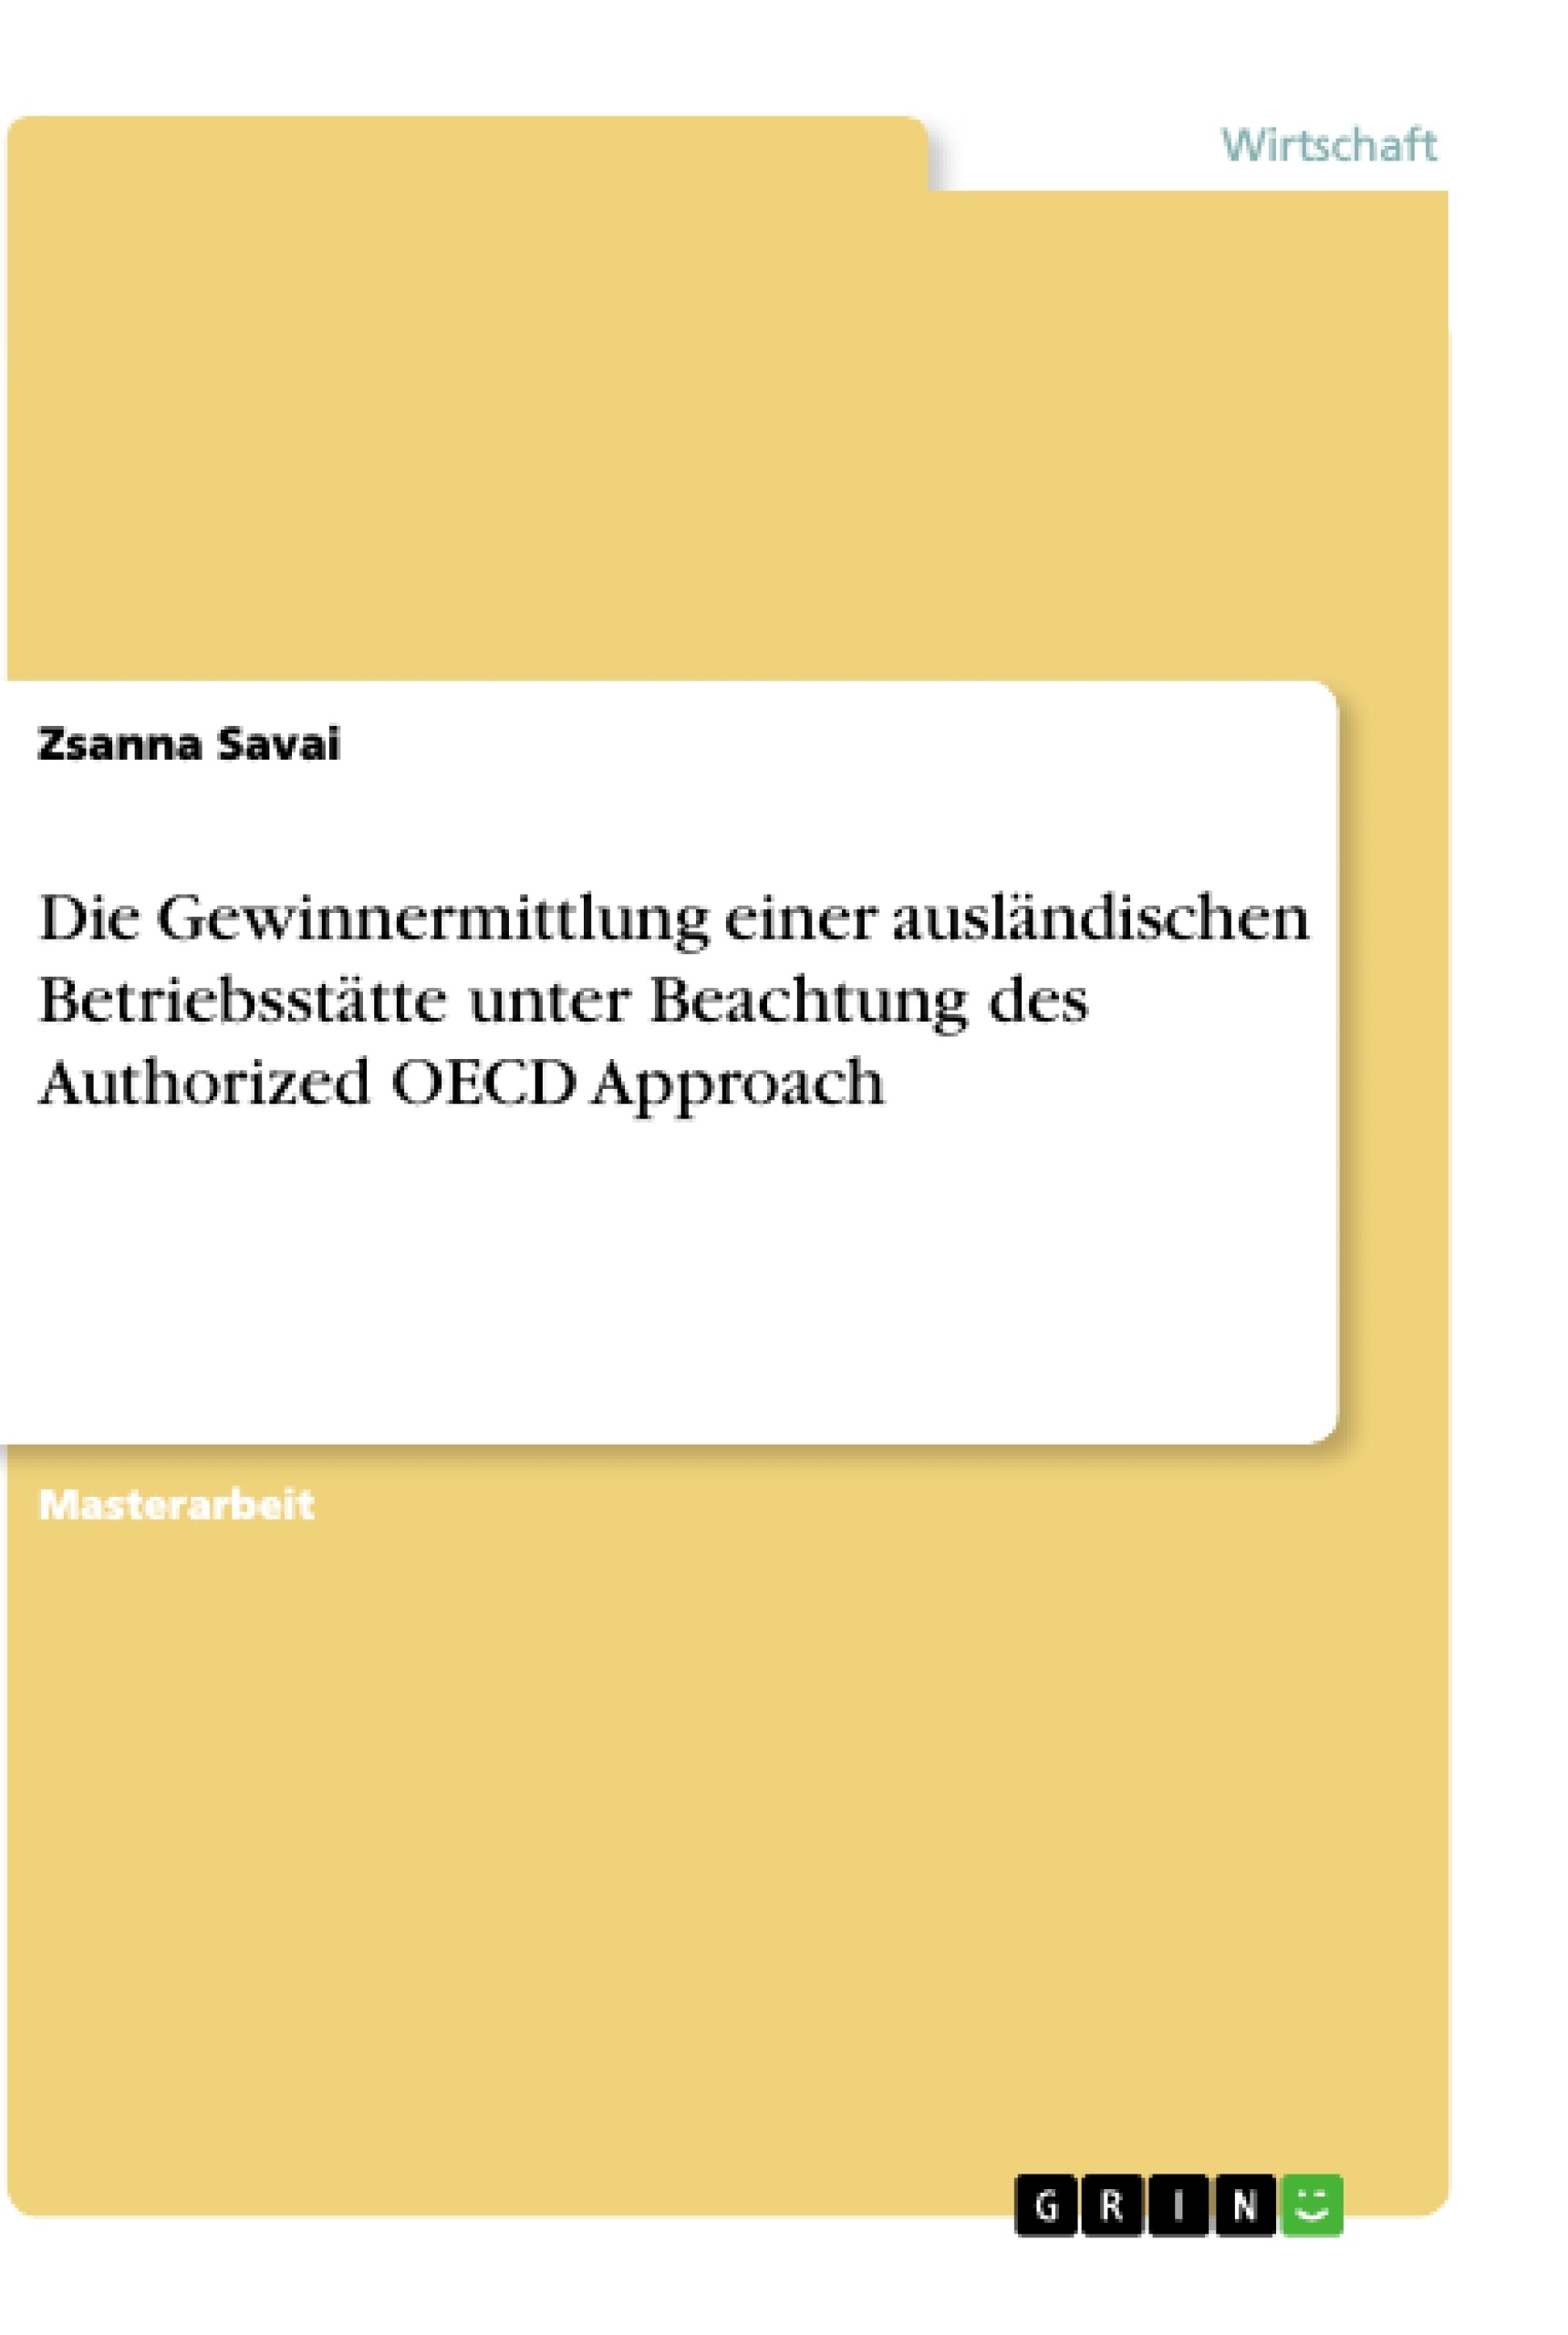 Título: Die Gewinnermittlung einer ausländischen Betriebsstätte unter Beachtung des Authorized OECD Approach